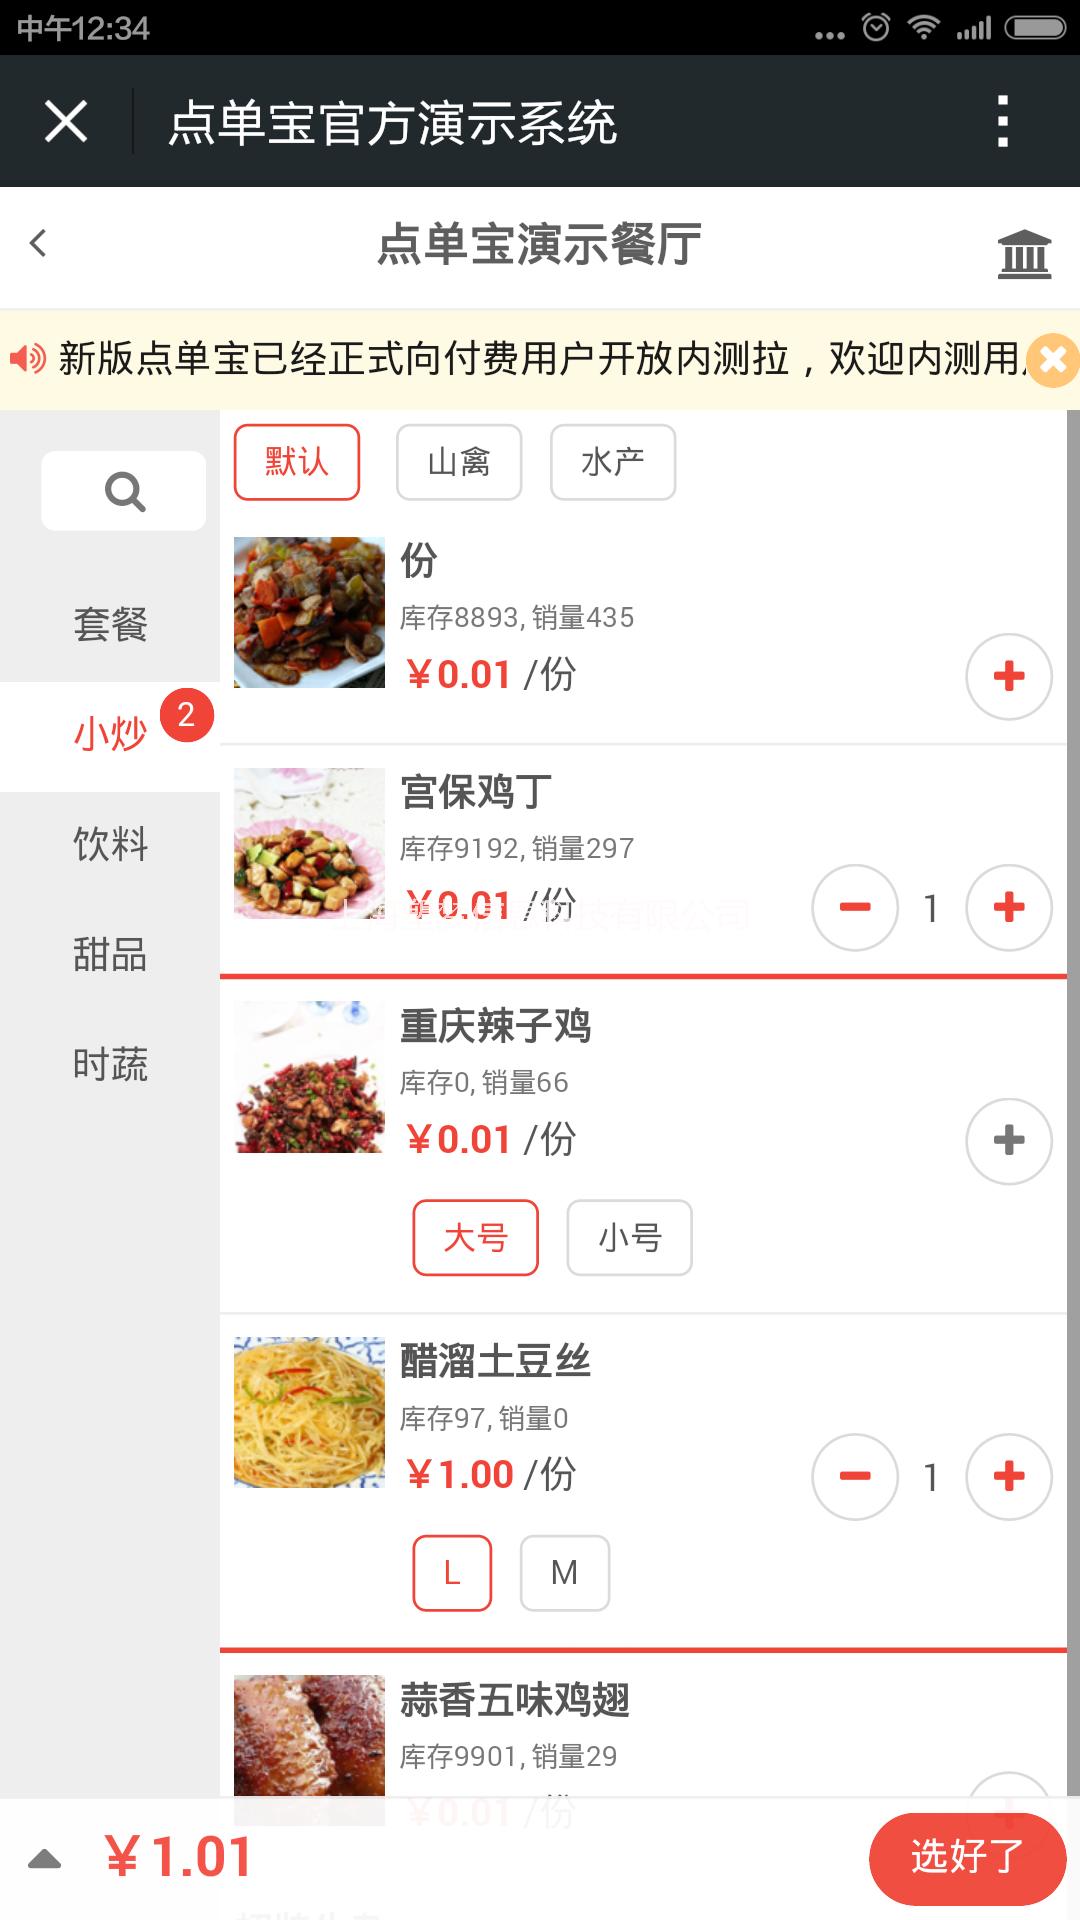 深圳市点单宝餐厅管理软件 云餐厅软件厂家供应点单宝餐厅管理软件 云餐厅软件